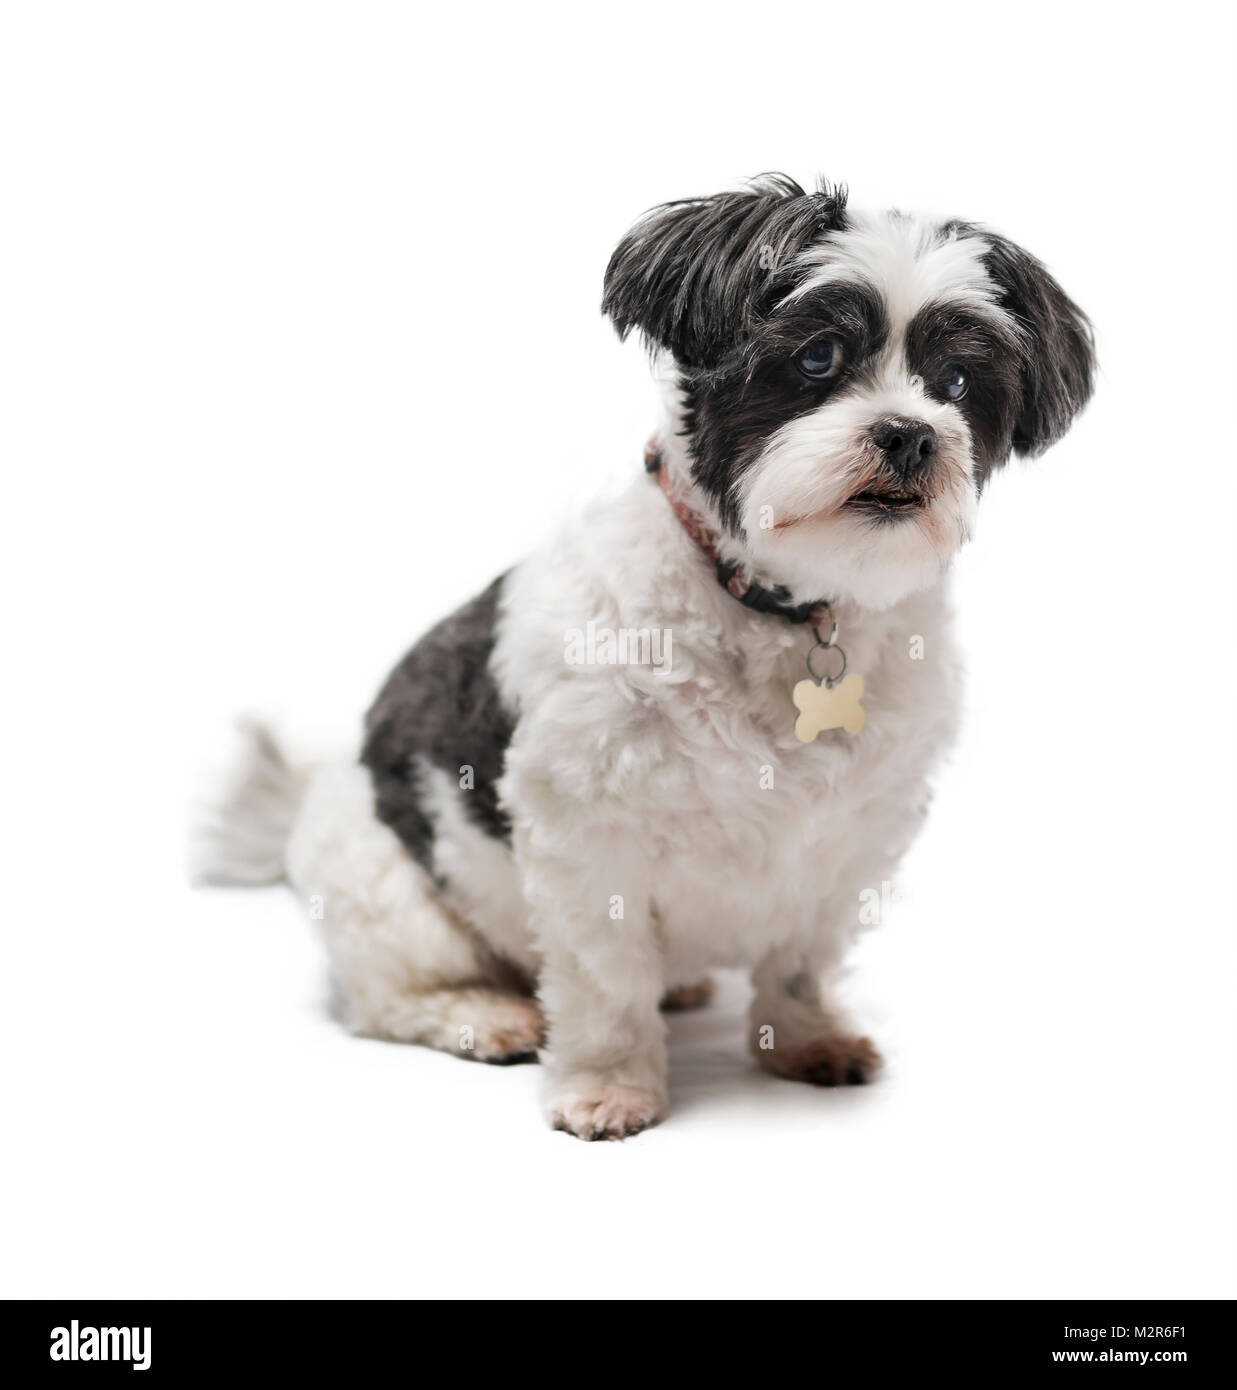 Mignon, adorable et câline noir ou gris et blanc chien Lhassa Apso isolé sur un fond blanc pur studio Banque D'Images